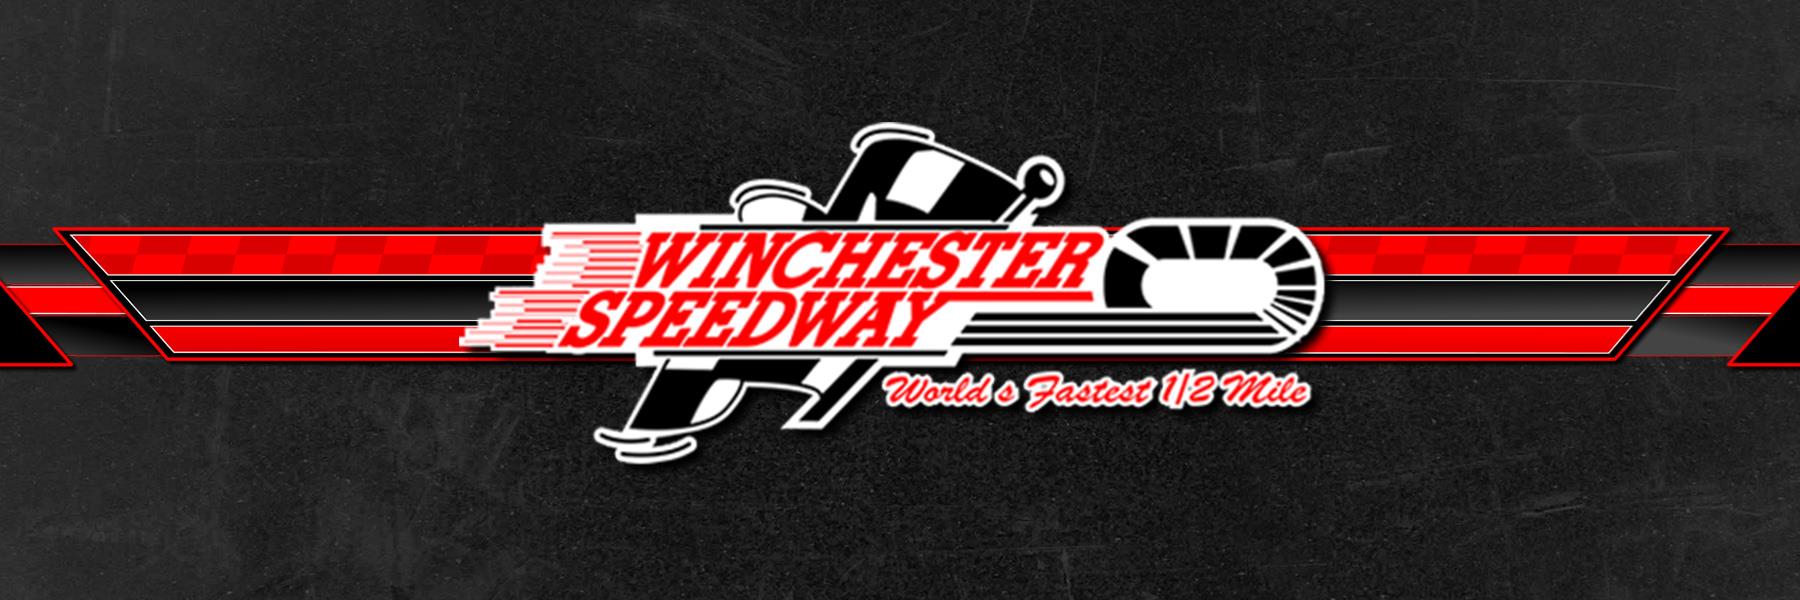 10/22/1995 - Winchester Speedway